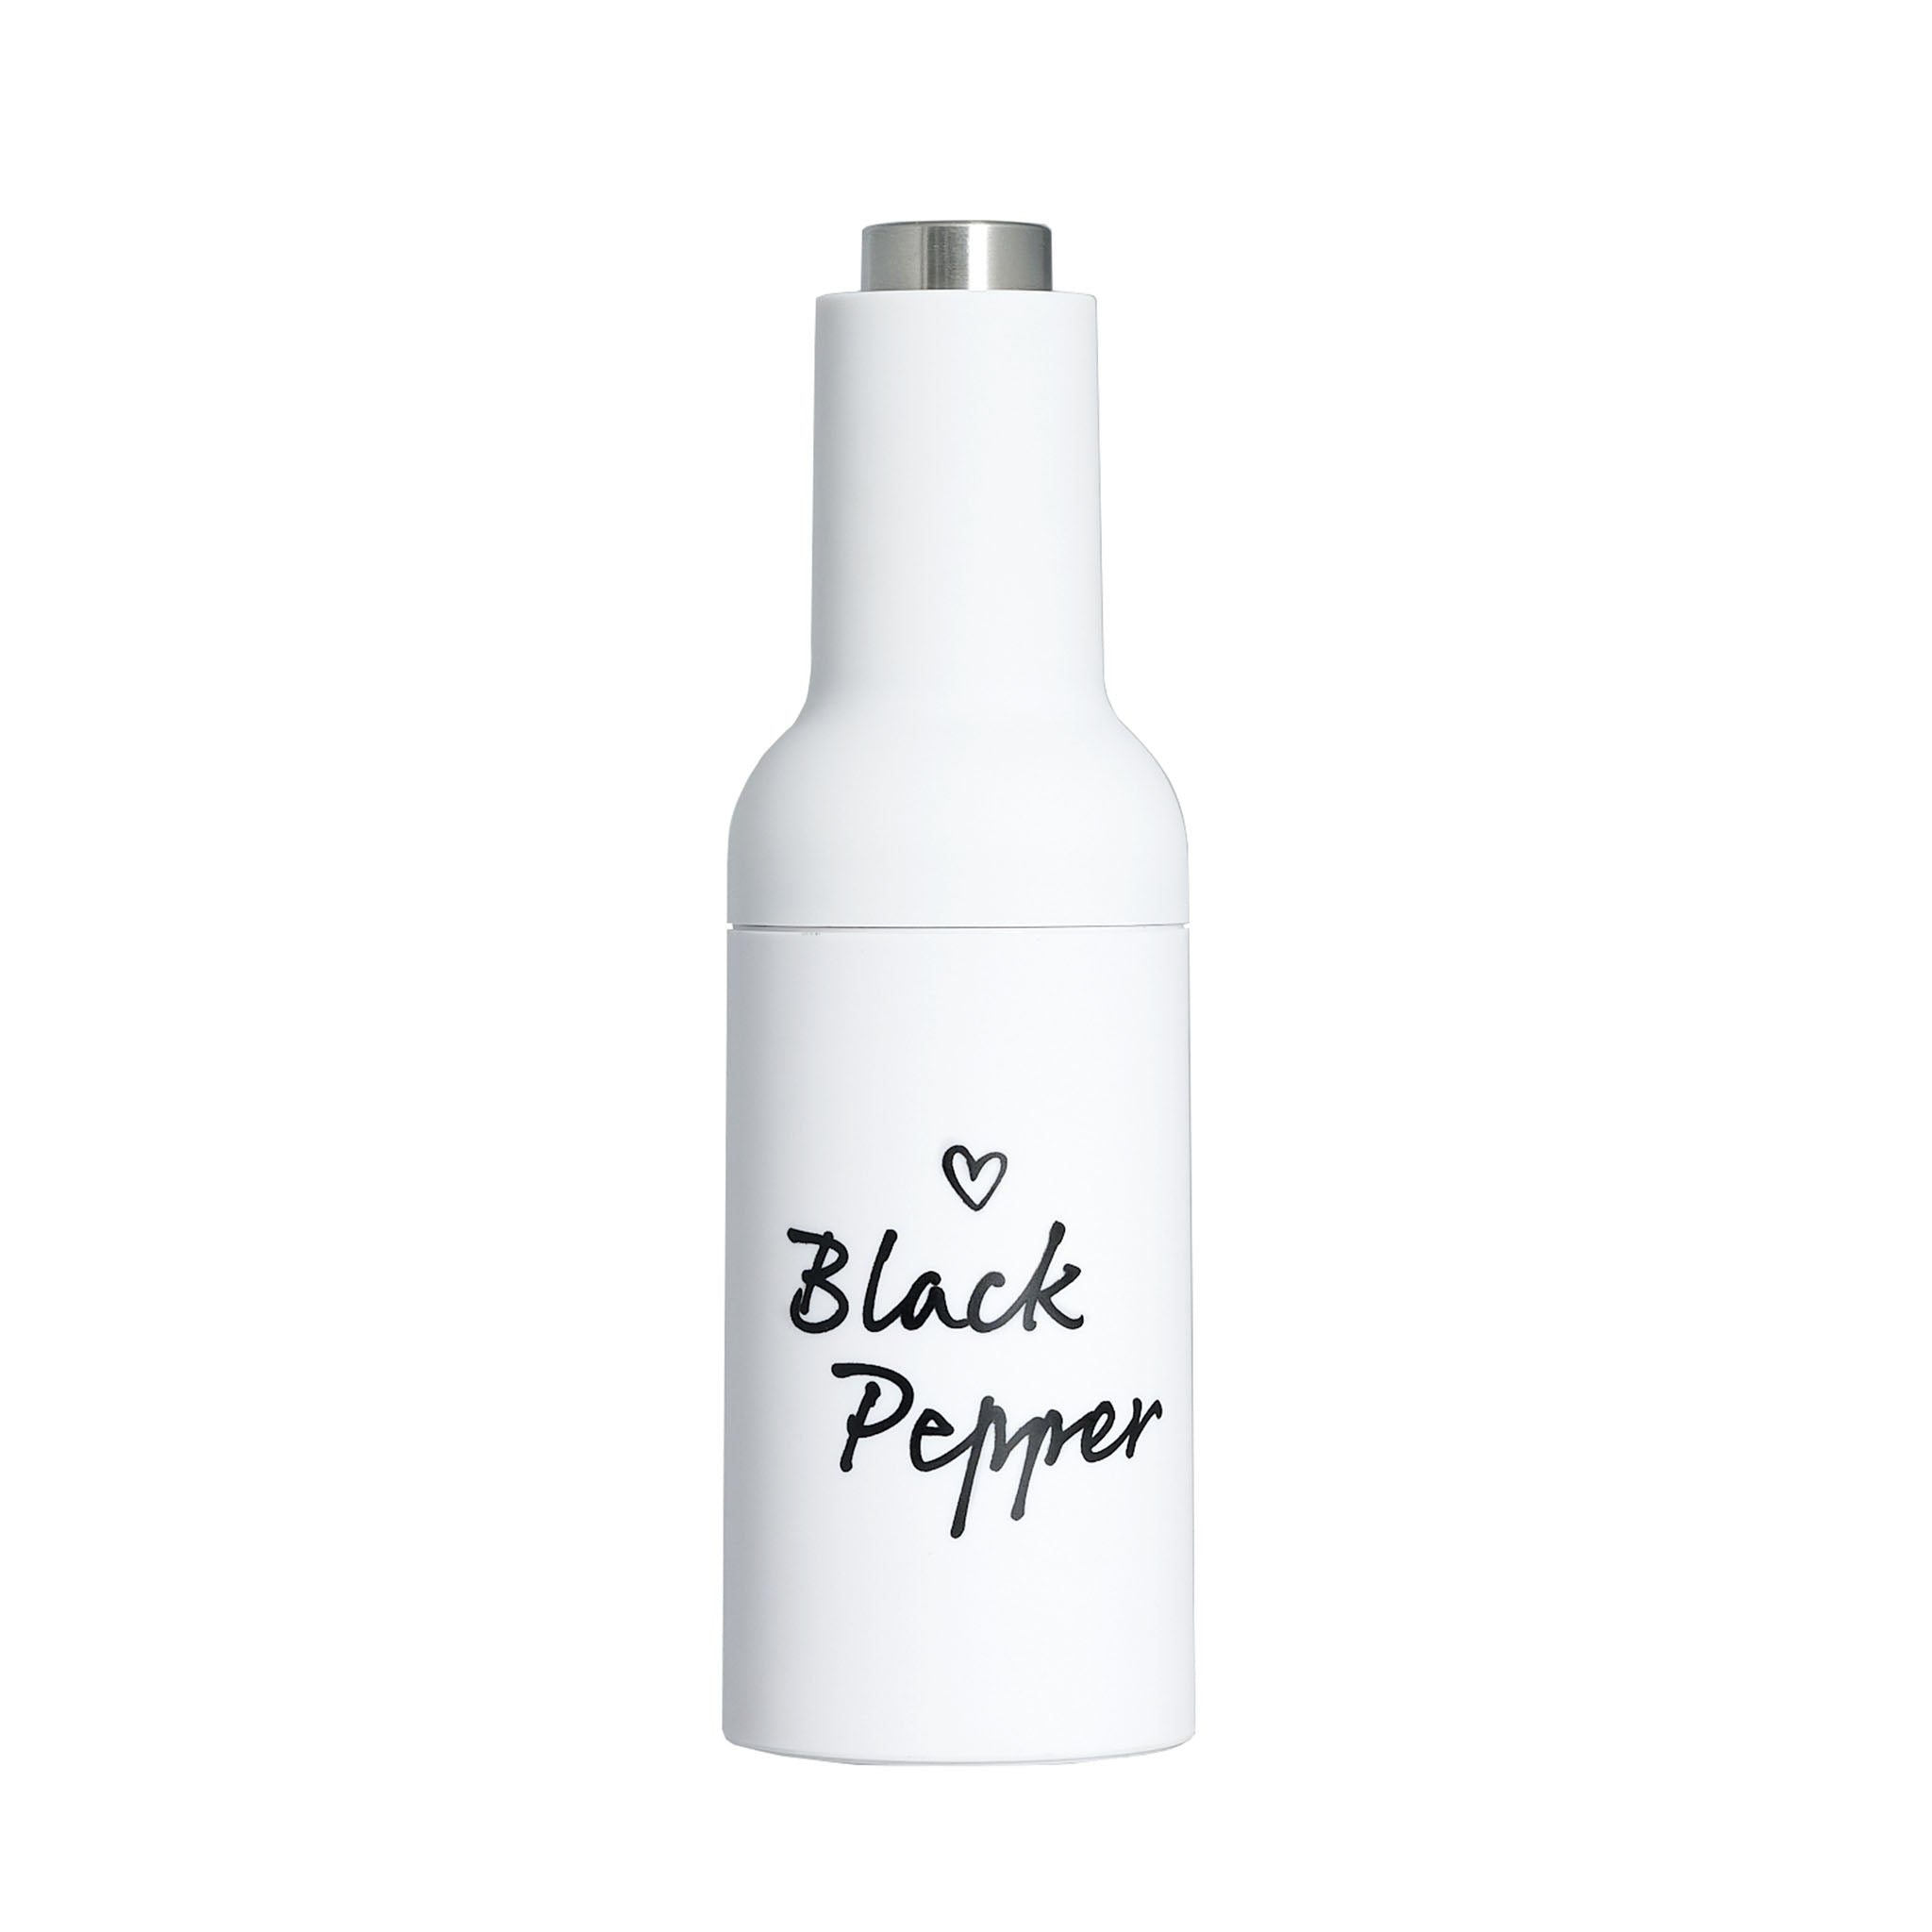 "Black Pepper" Electric Pepper Grinder